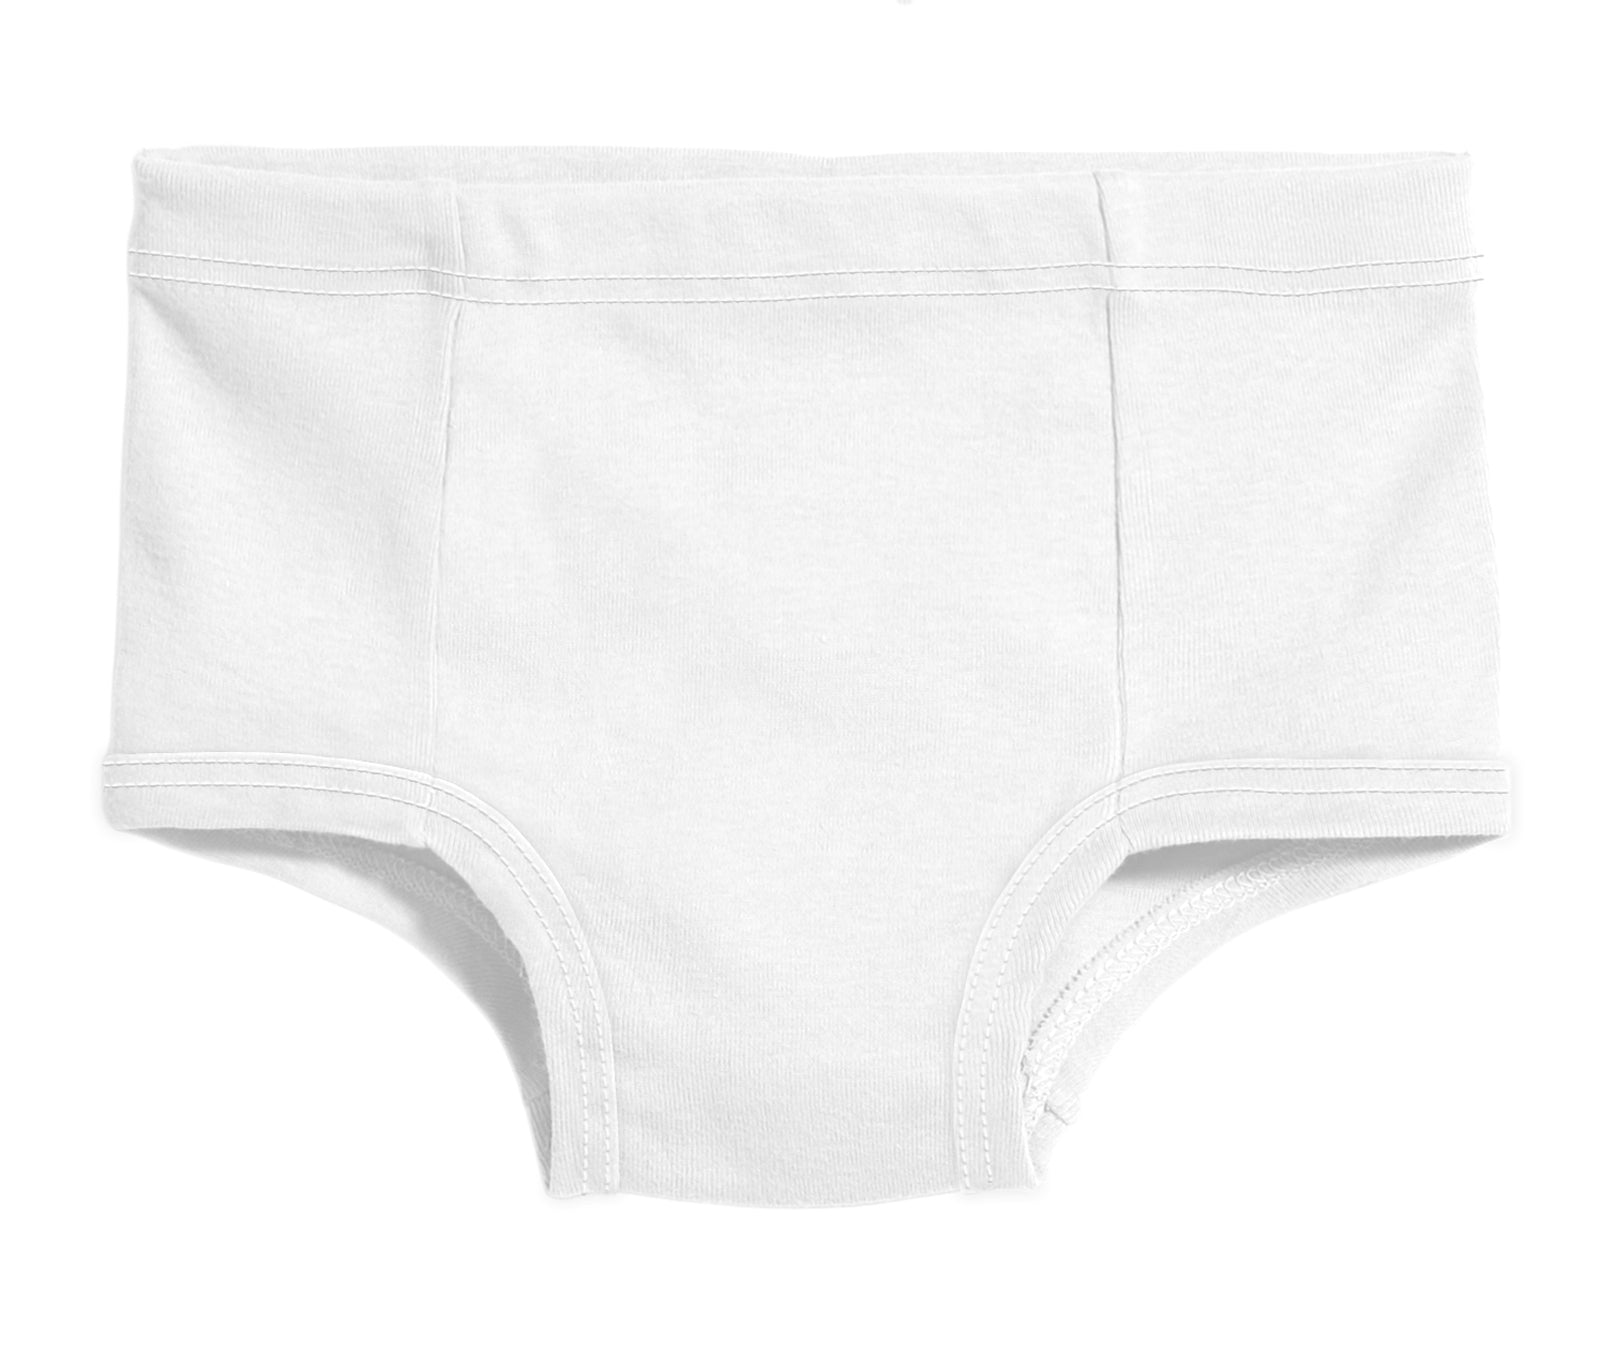 Unisex Briefs, Children's Underwear